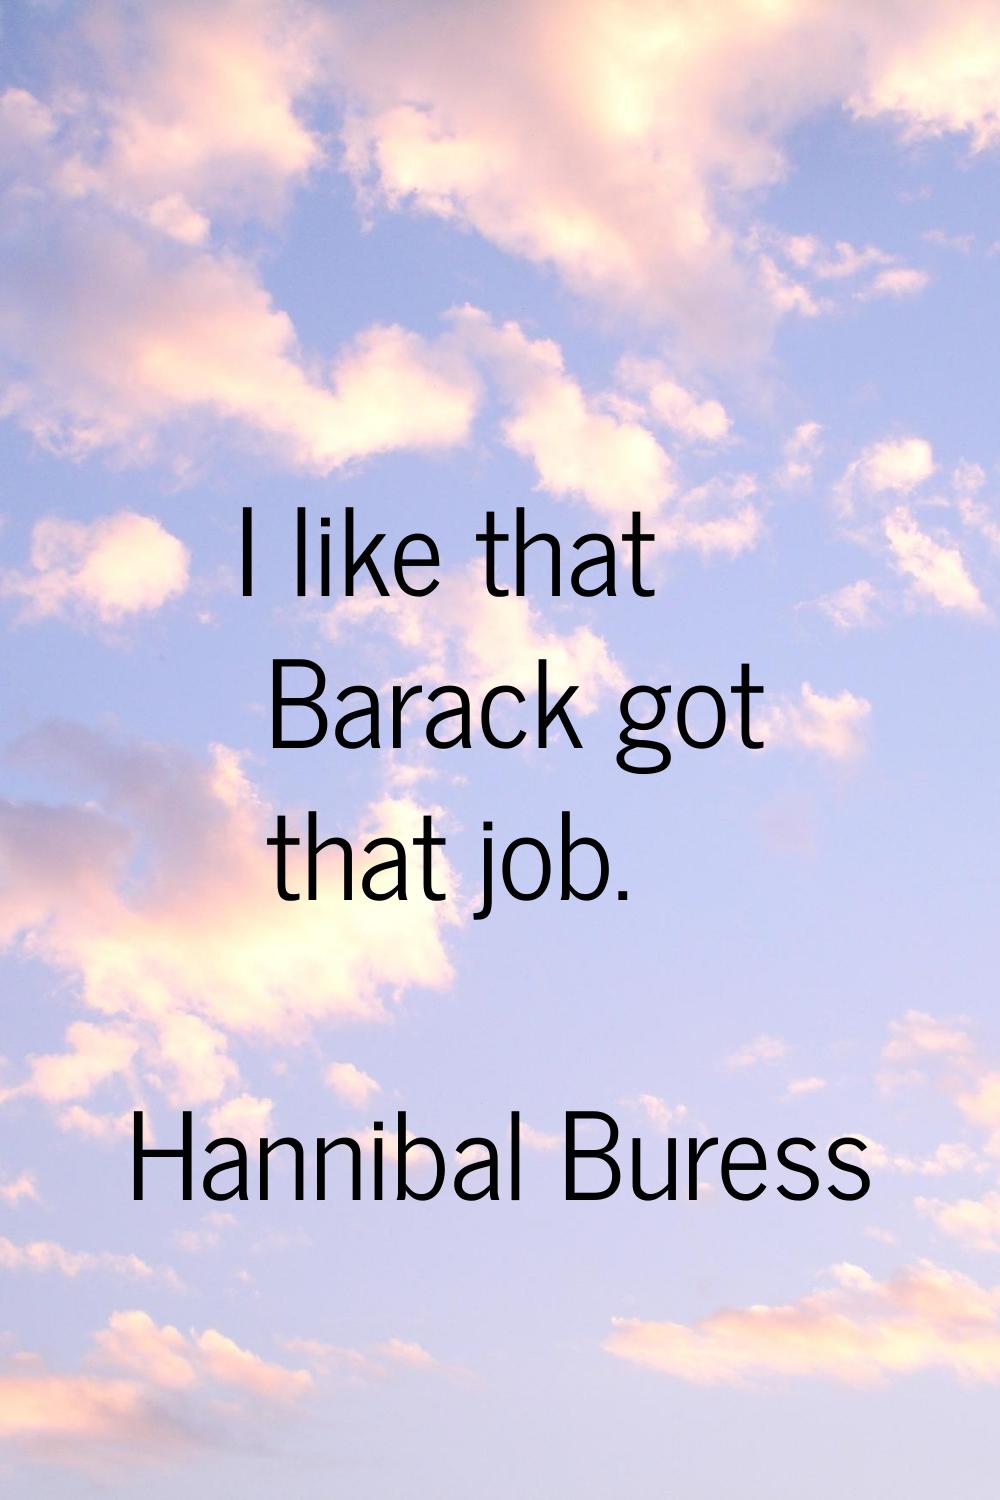 I like that Barack got that job.